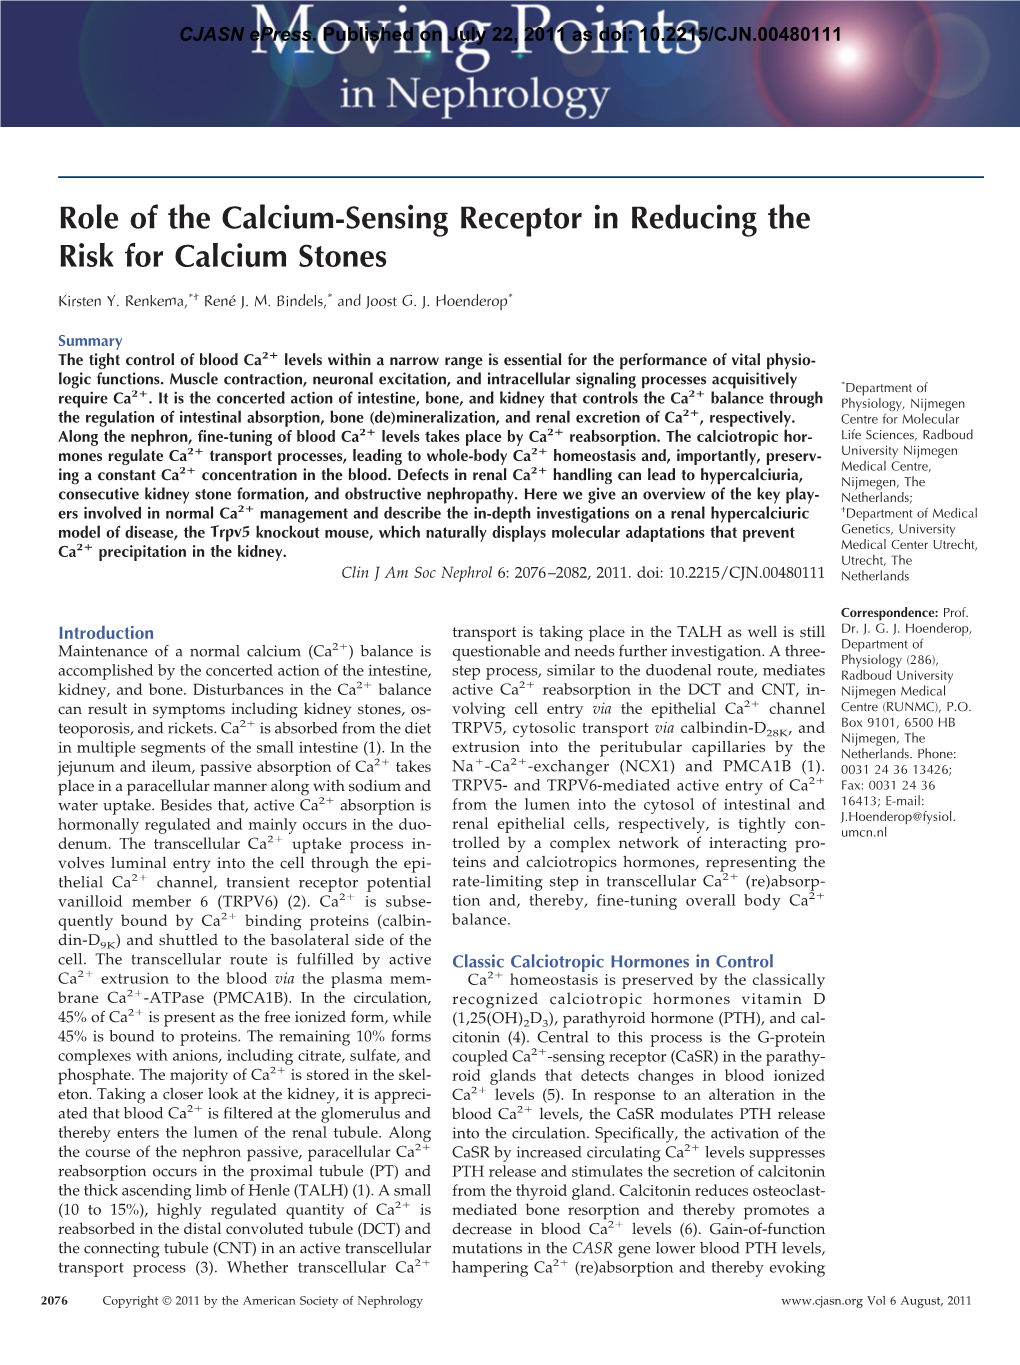 Role of the Calcium-Sensing Receptor in Reducing the Risk for Calcium Stones